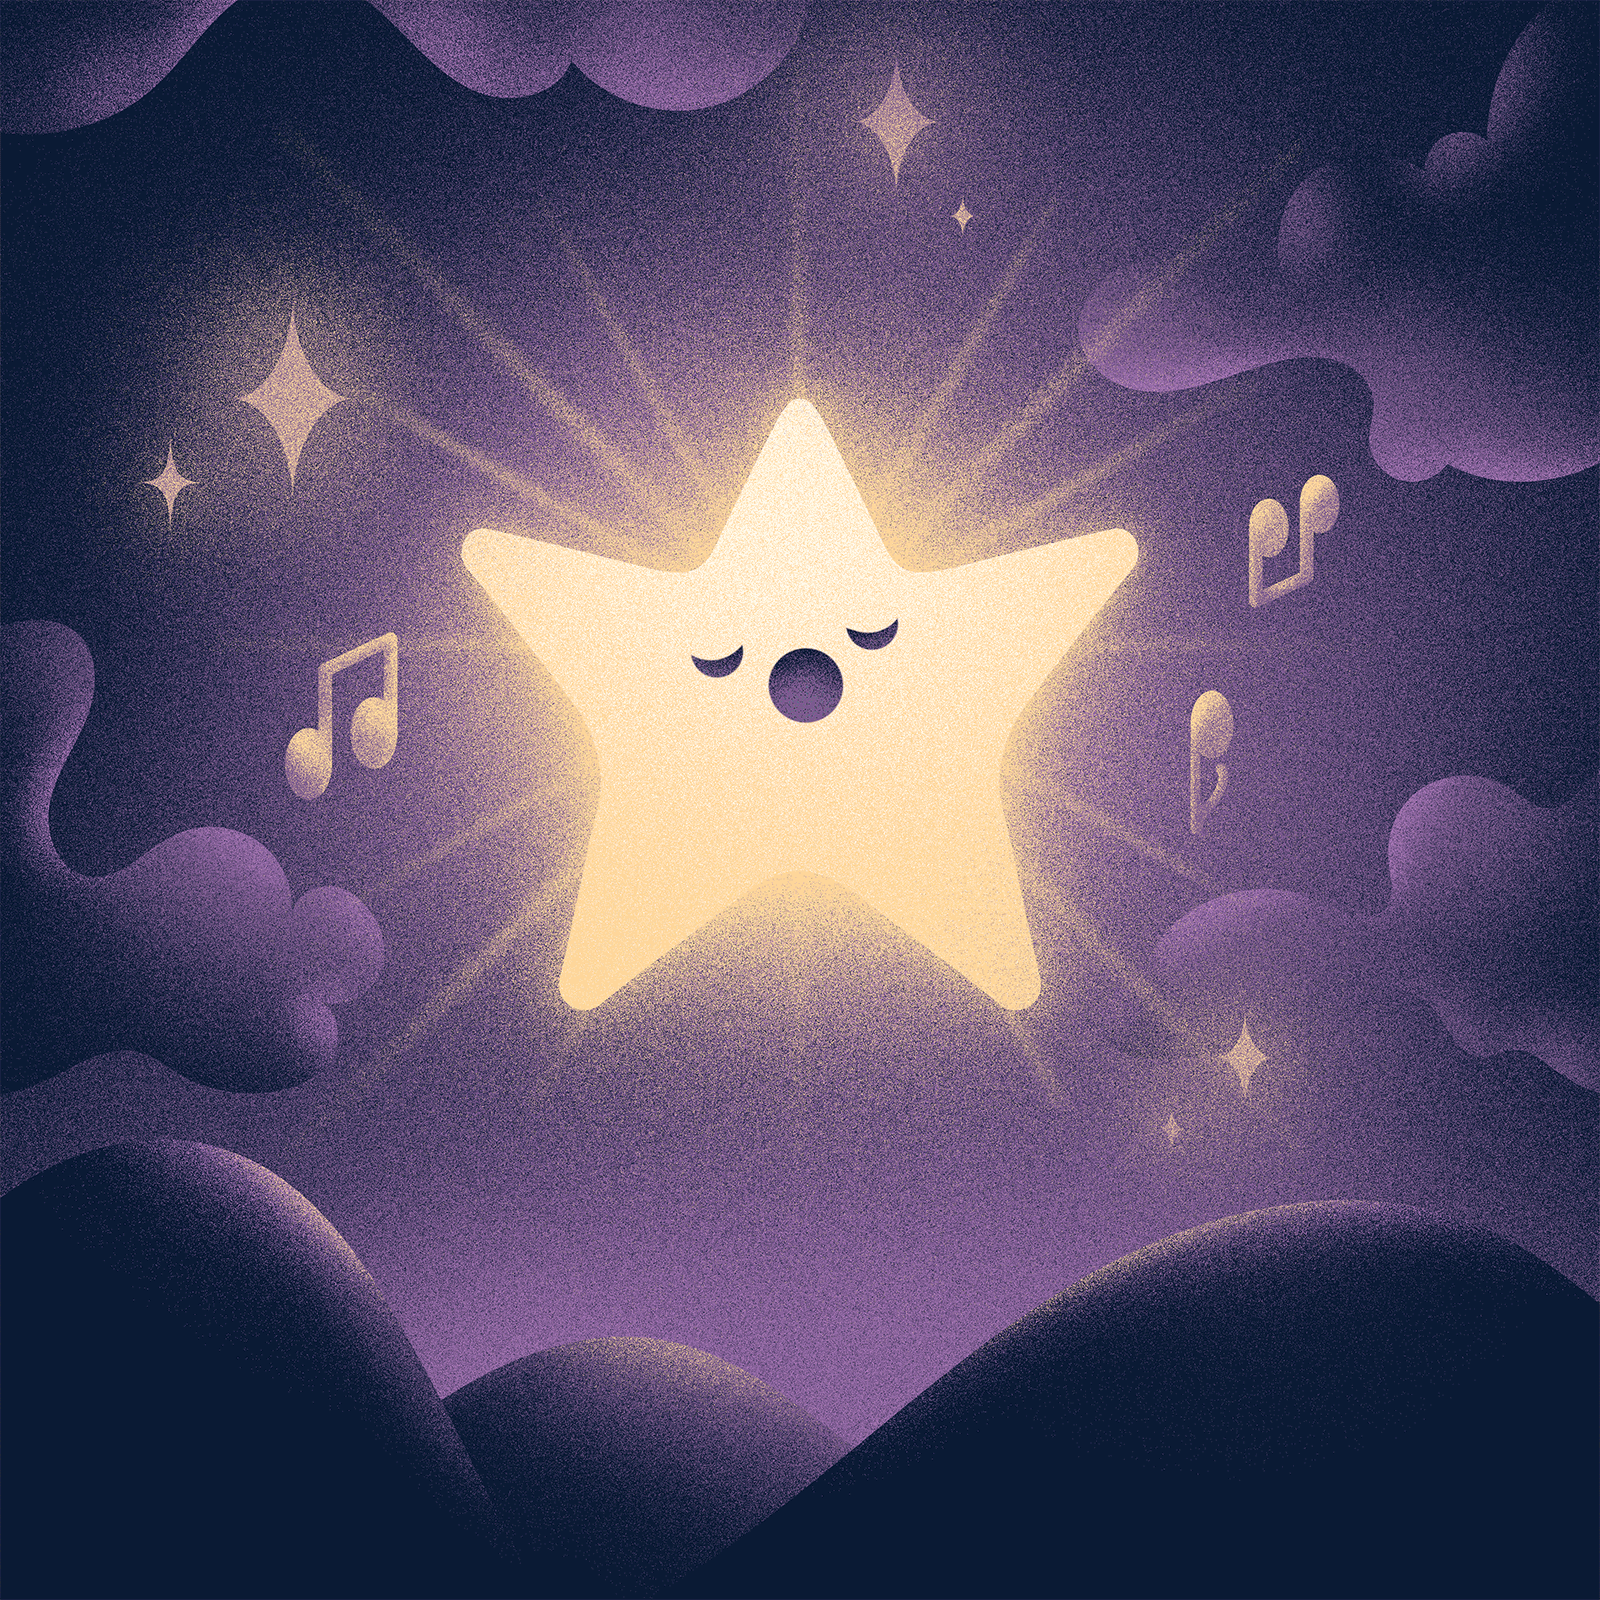 Goodnight, Starlight